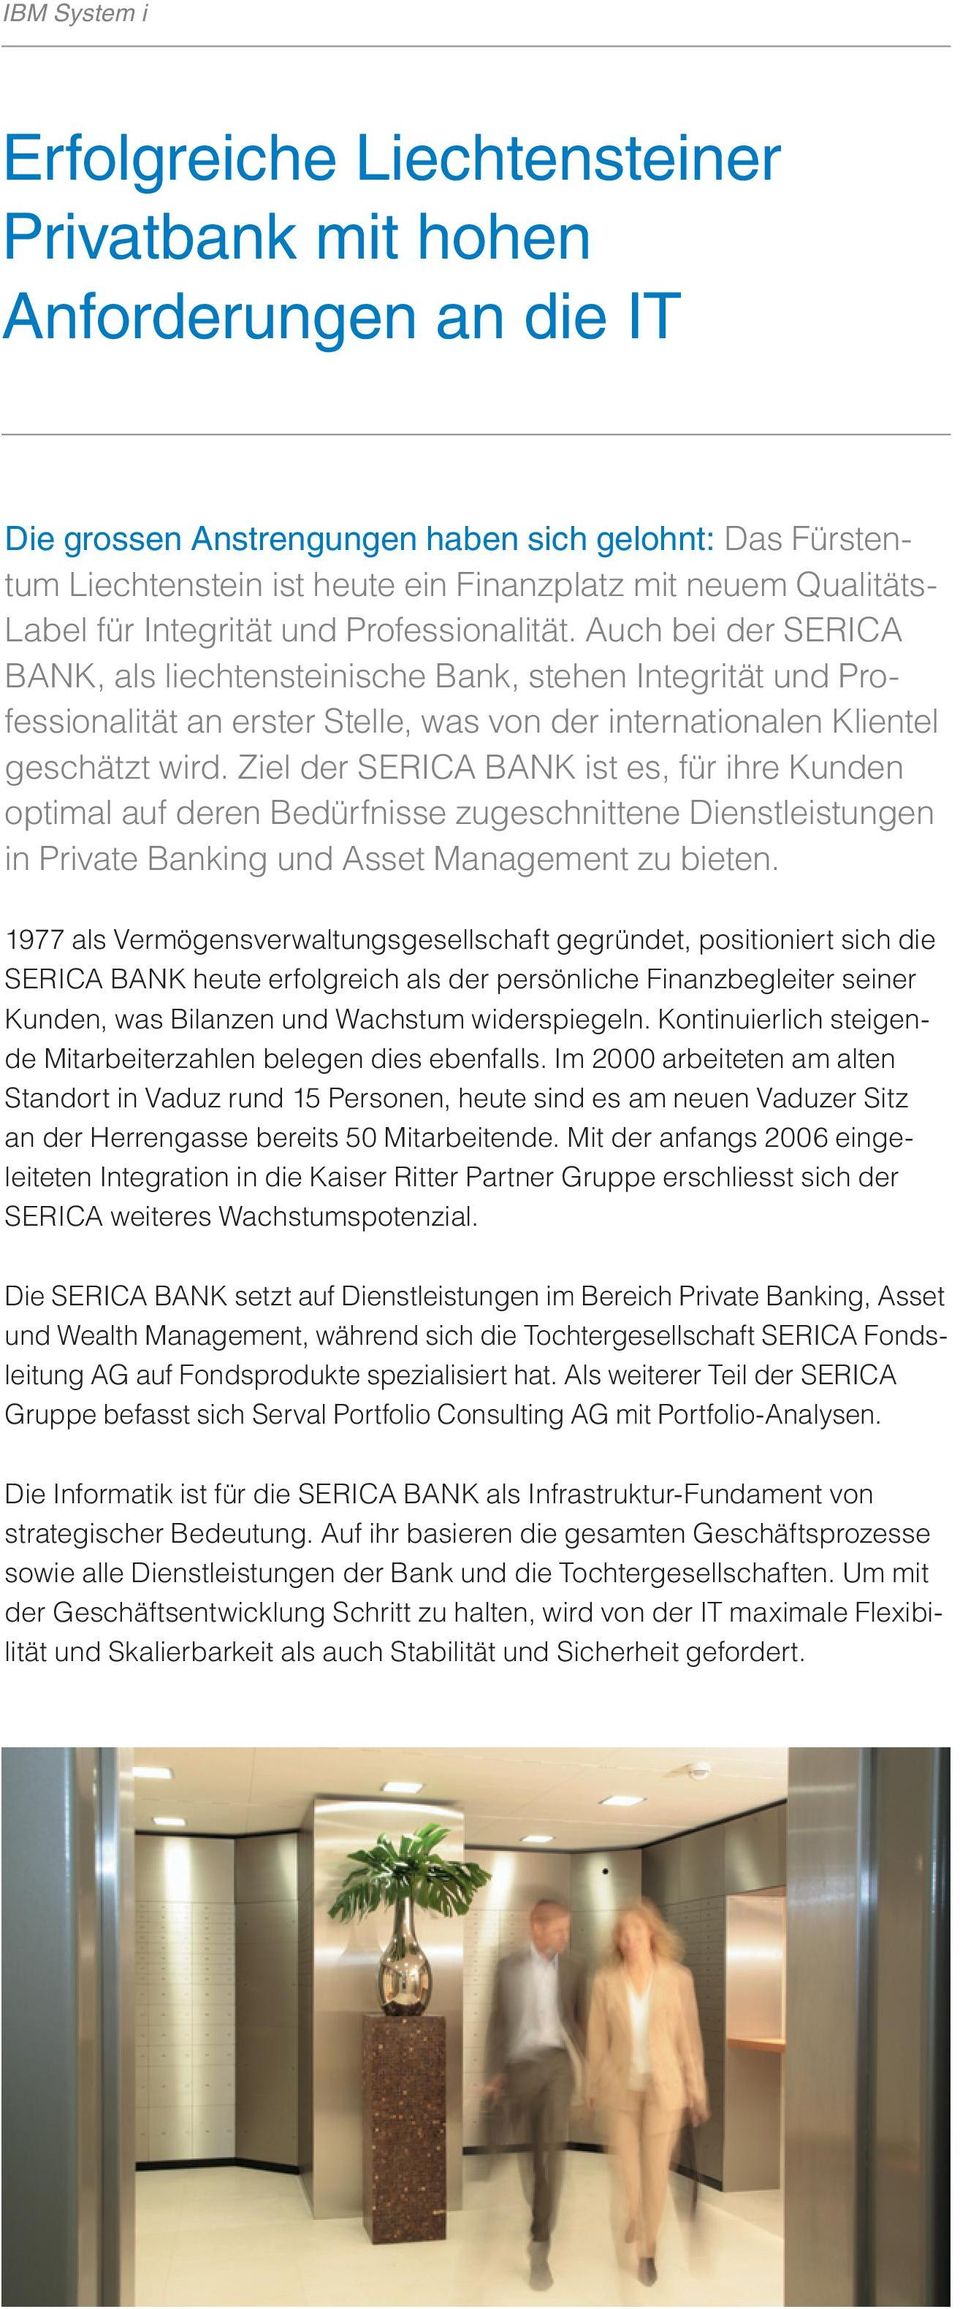 Auch bei der SERICA BANK, als liechtensteinische Bank, stehen Integrität und Professionalität an erster Stelle, was von der internationalen Klientel geschätzt wird.